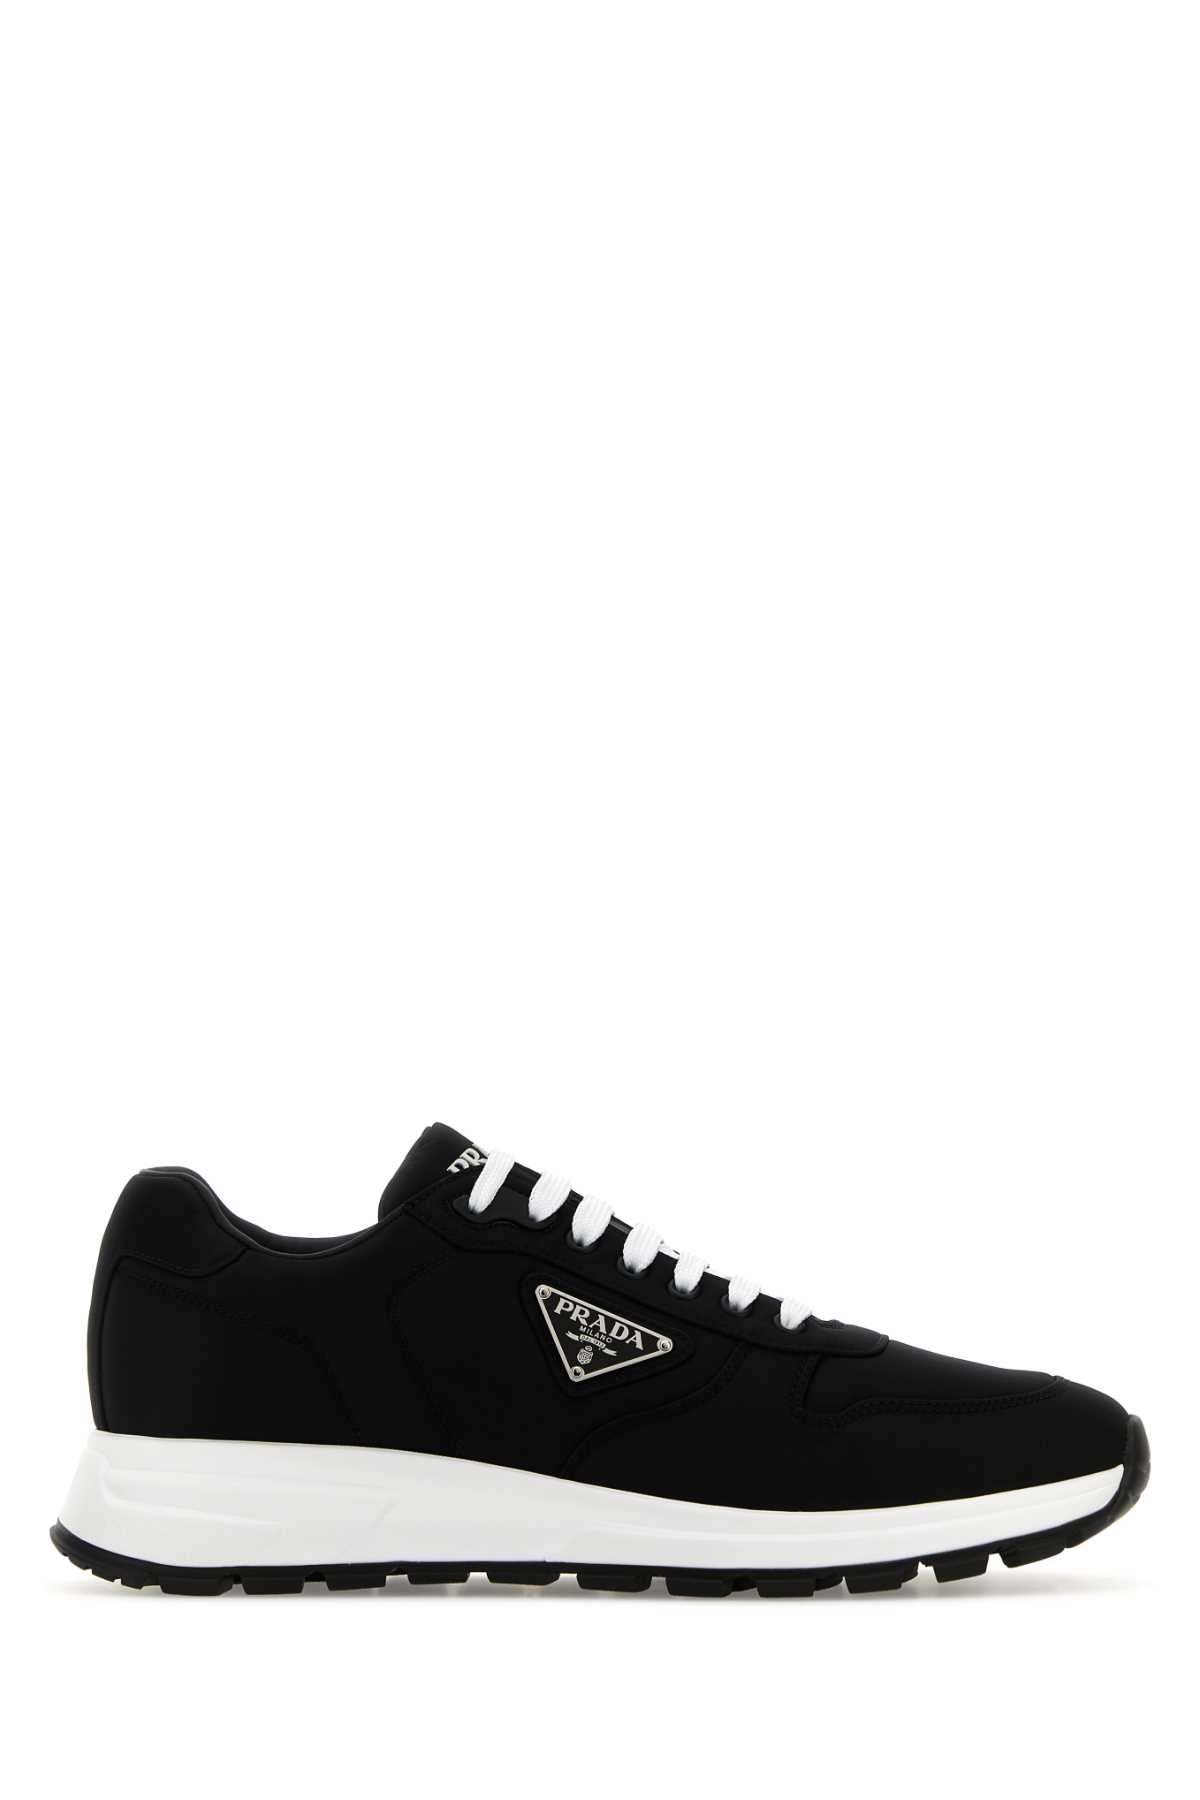 Shop Prada Black Re-nylon Prax 01 Sneakers In Nero